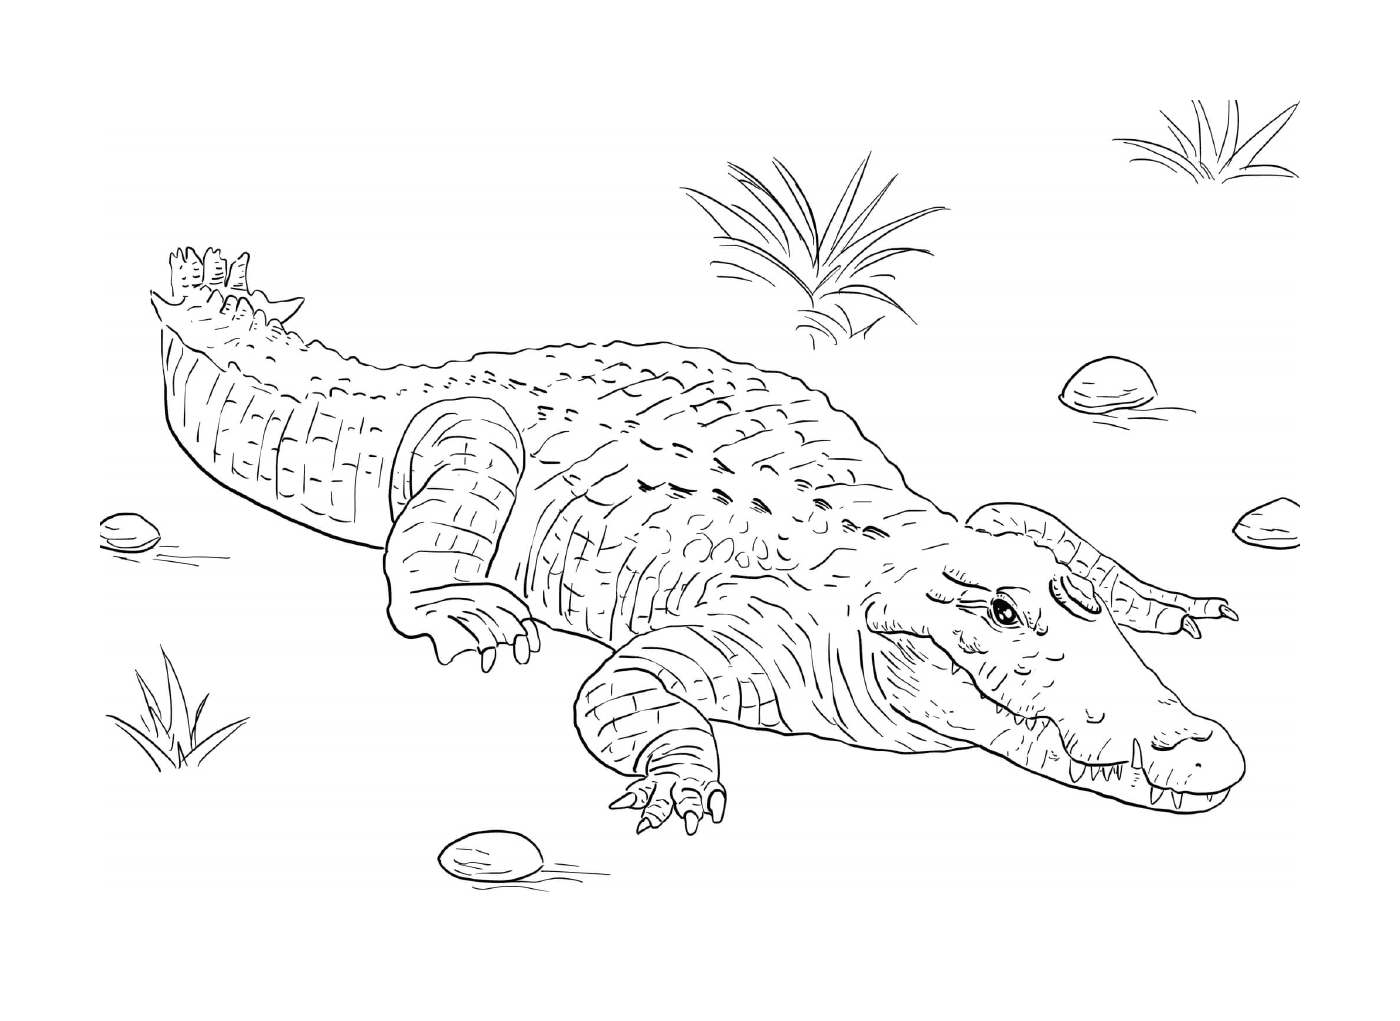  Un cocodrilo del Nilo tumbado en el suelo 